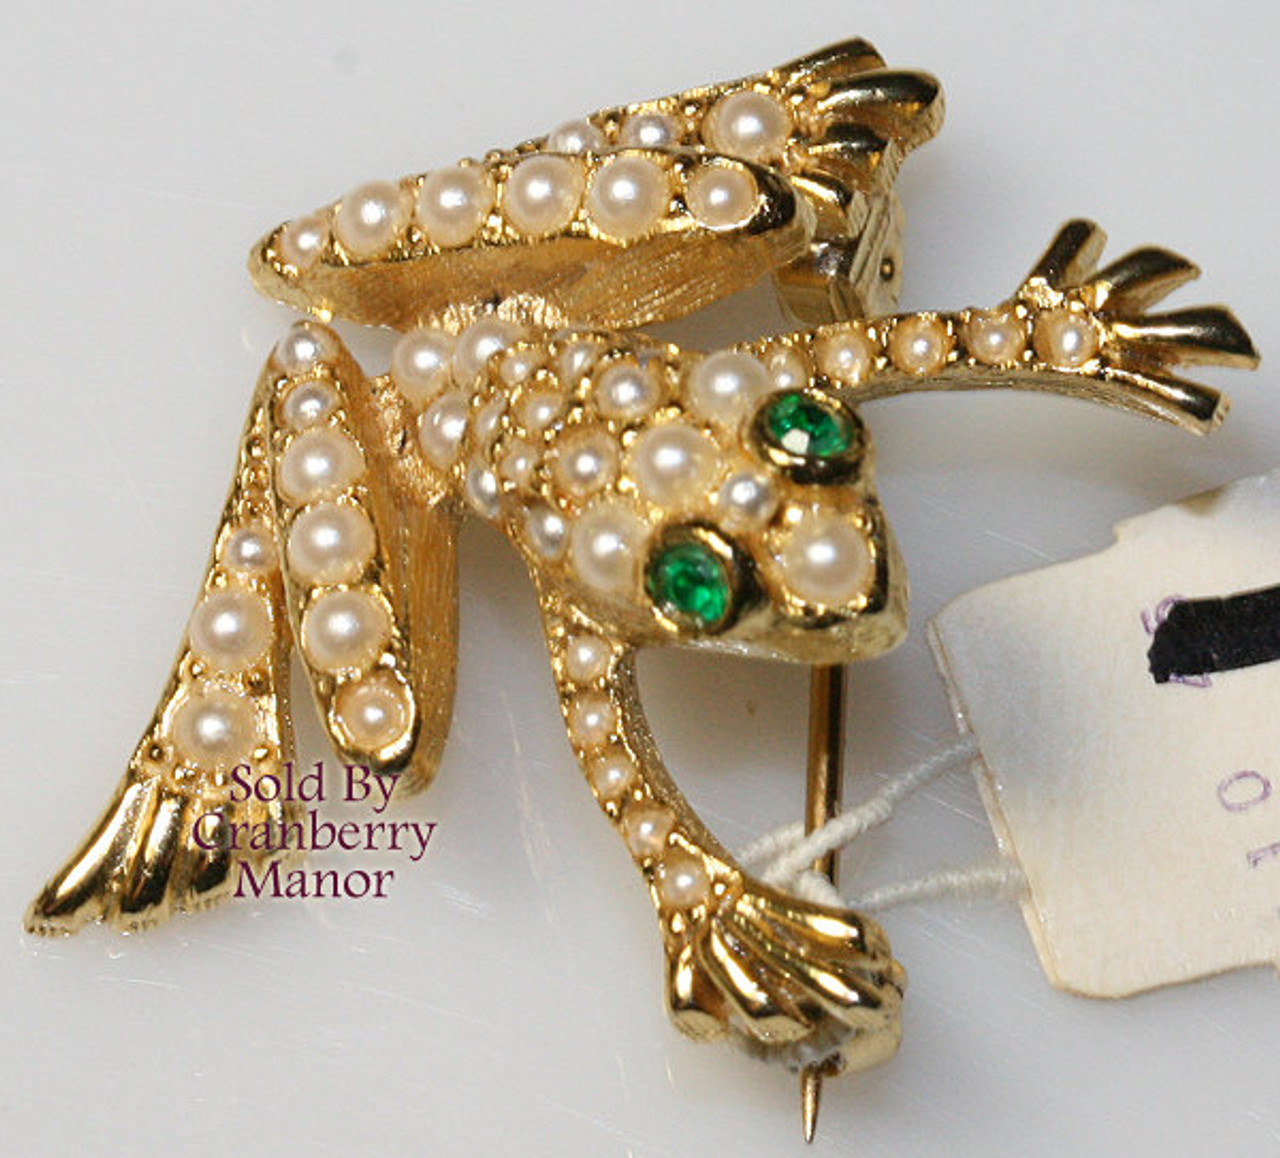 Neiman Marcus Vintage Jewelry